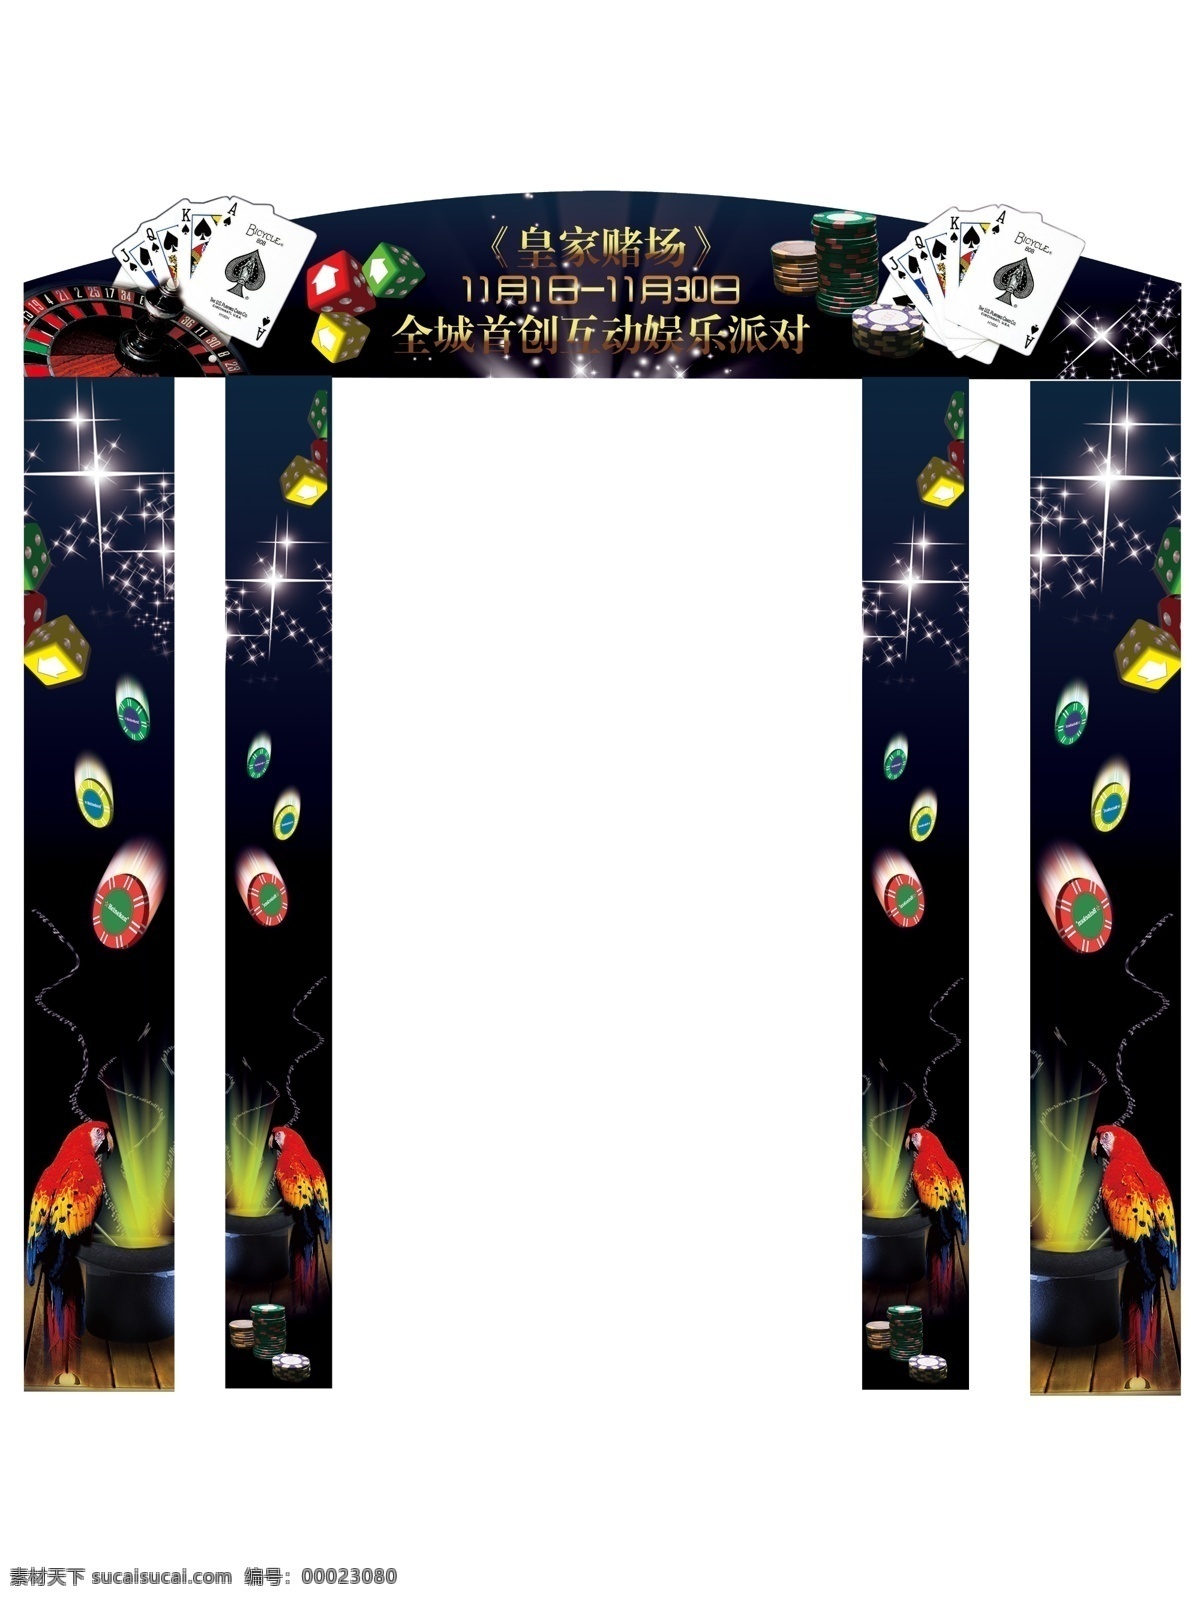 皇家 赌场 广告 形象 门 形象门 鹦鹉 扑克牌 骰子 筹码 星星 海报 帽子